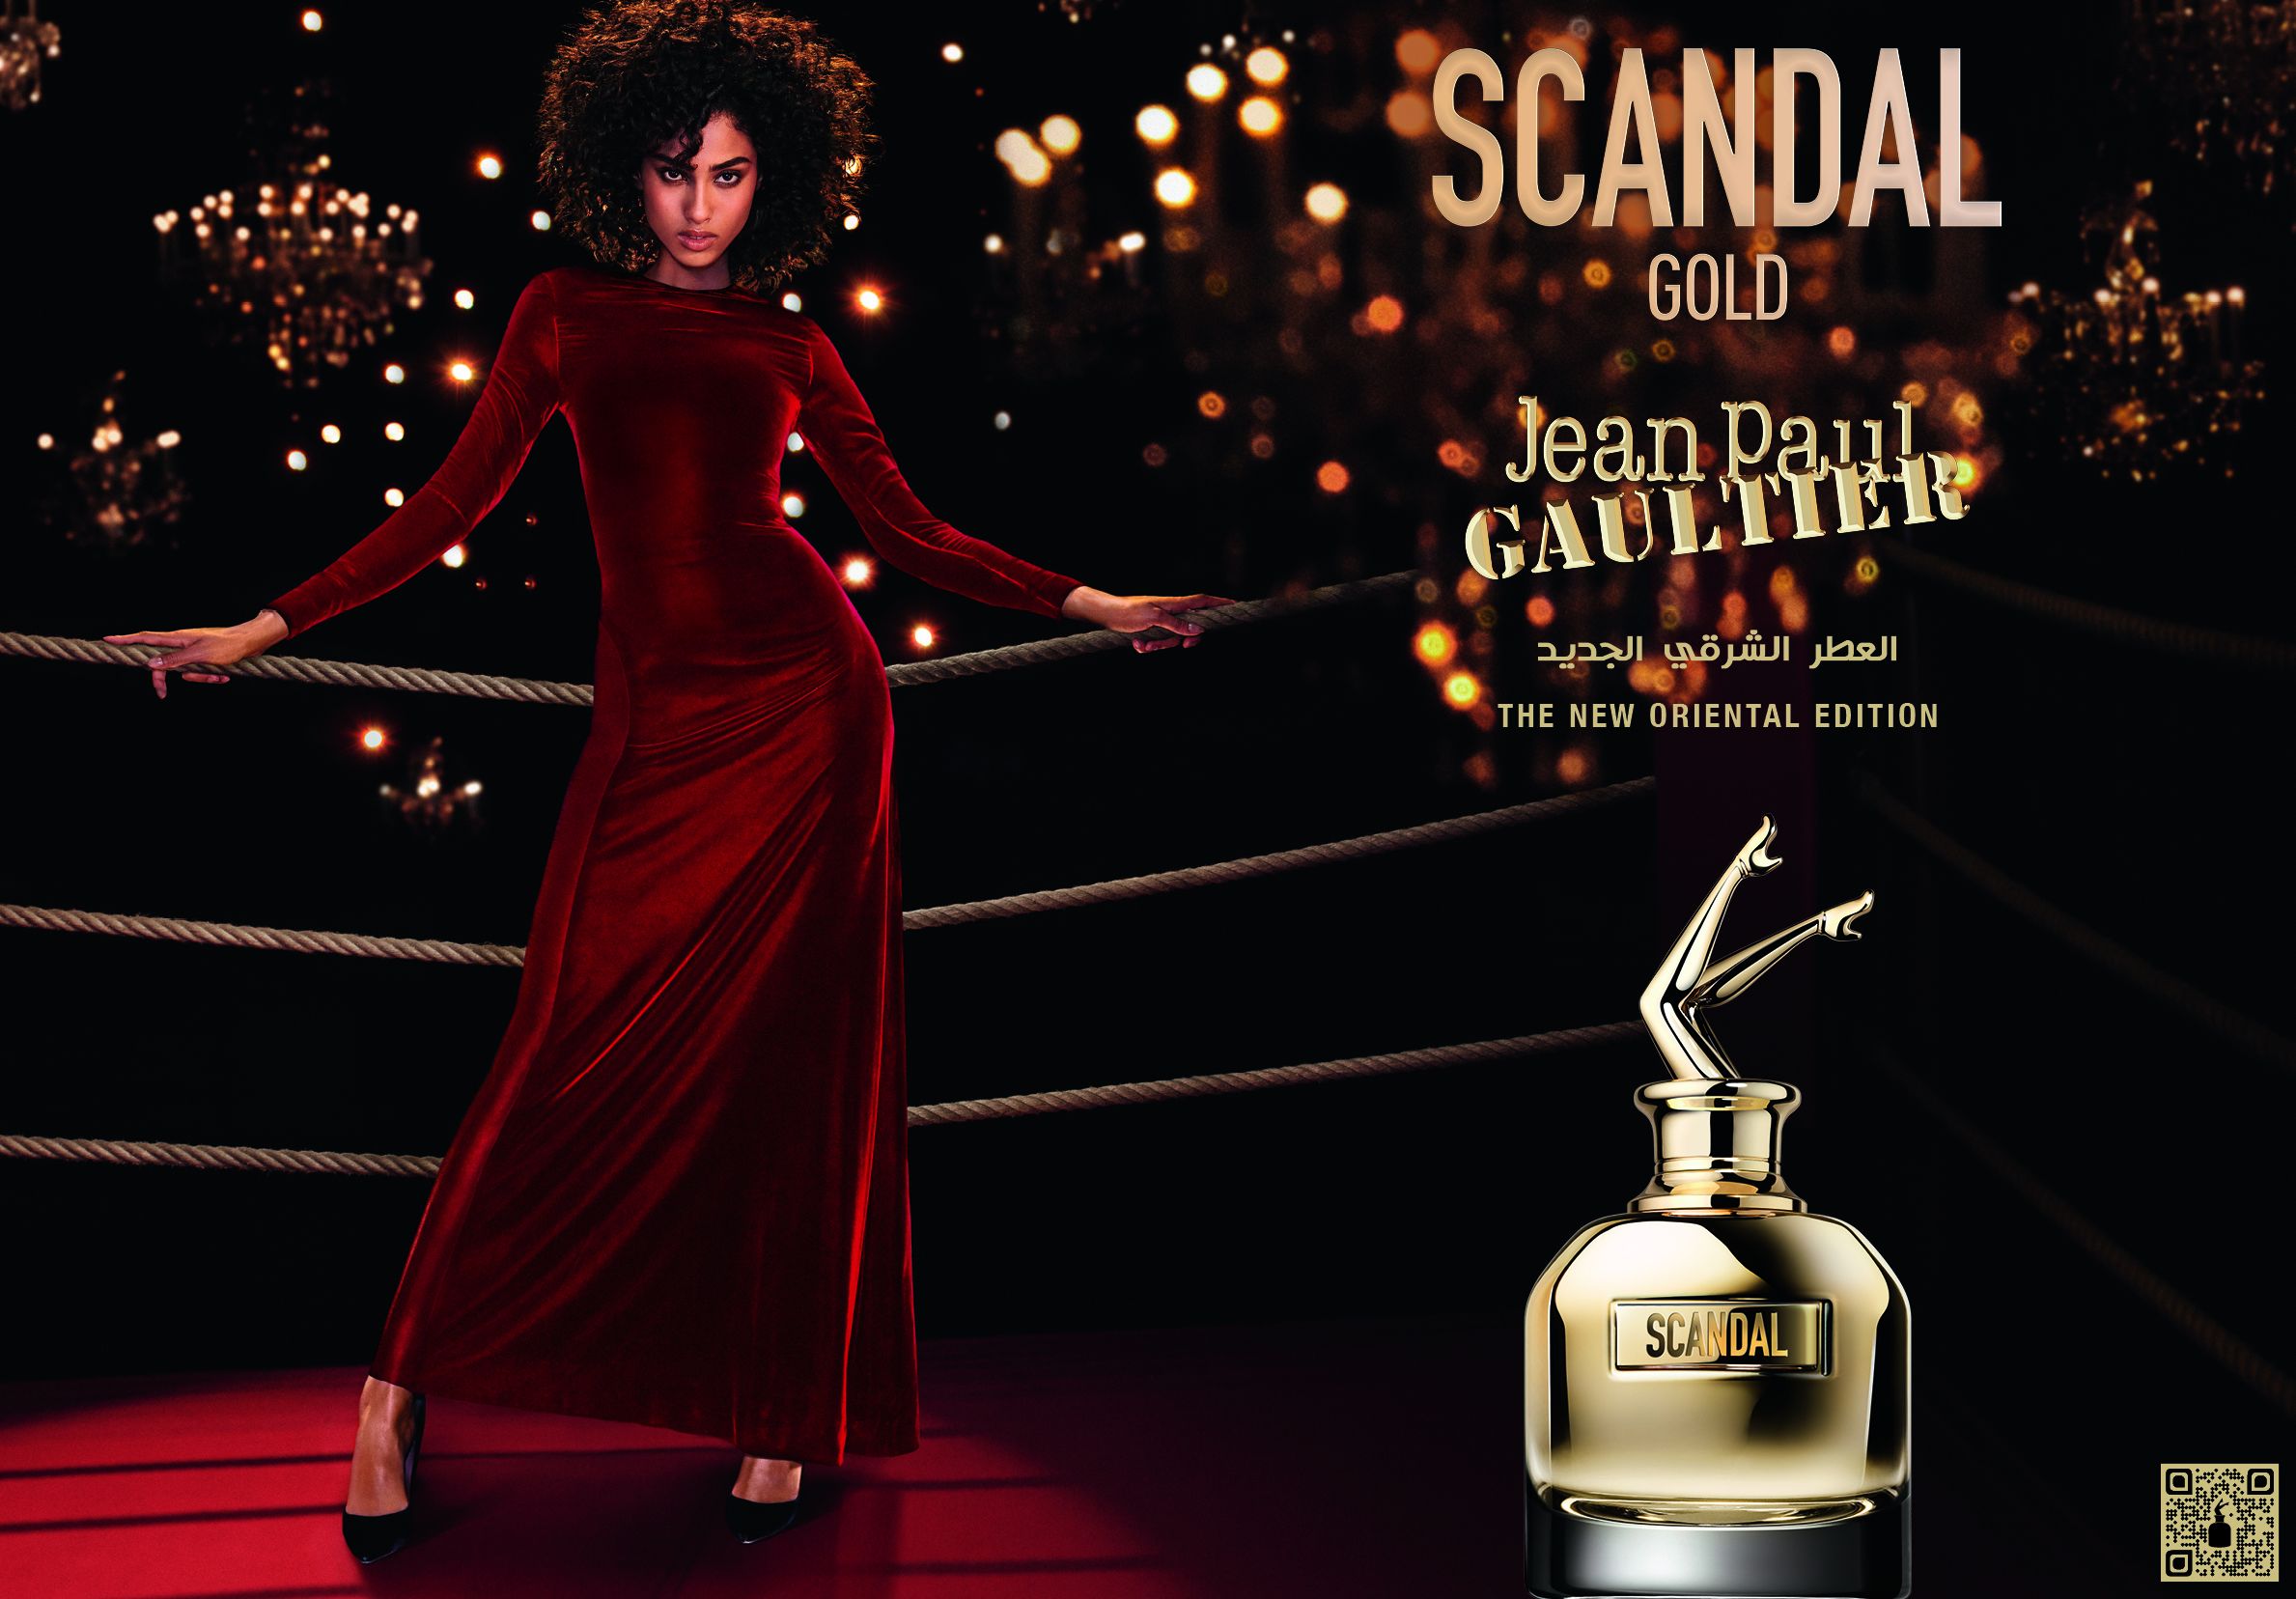 Scandal Gold Jean Paul Gaultier parfum un nouveau parfum pour femme 2021